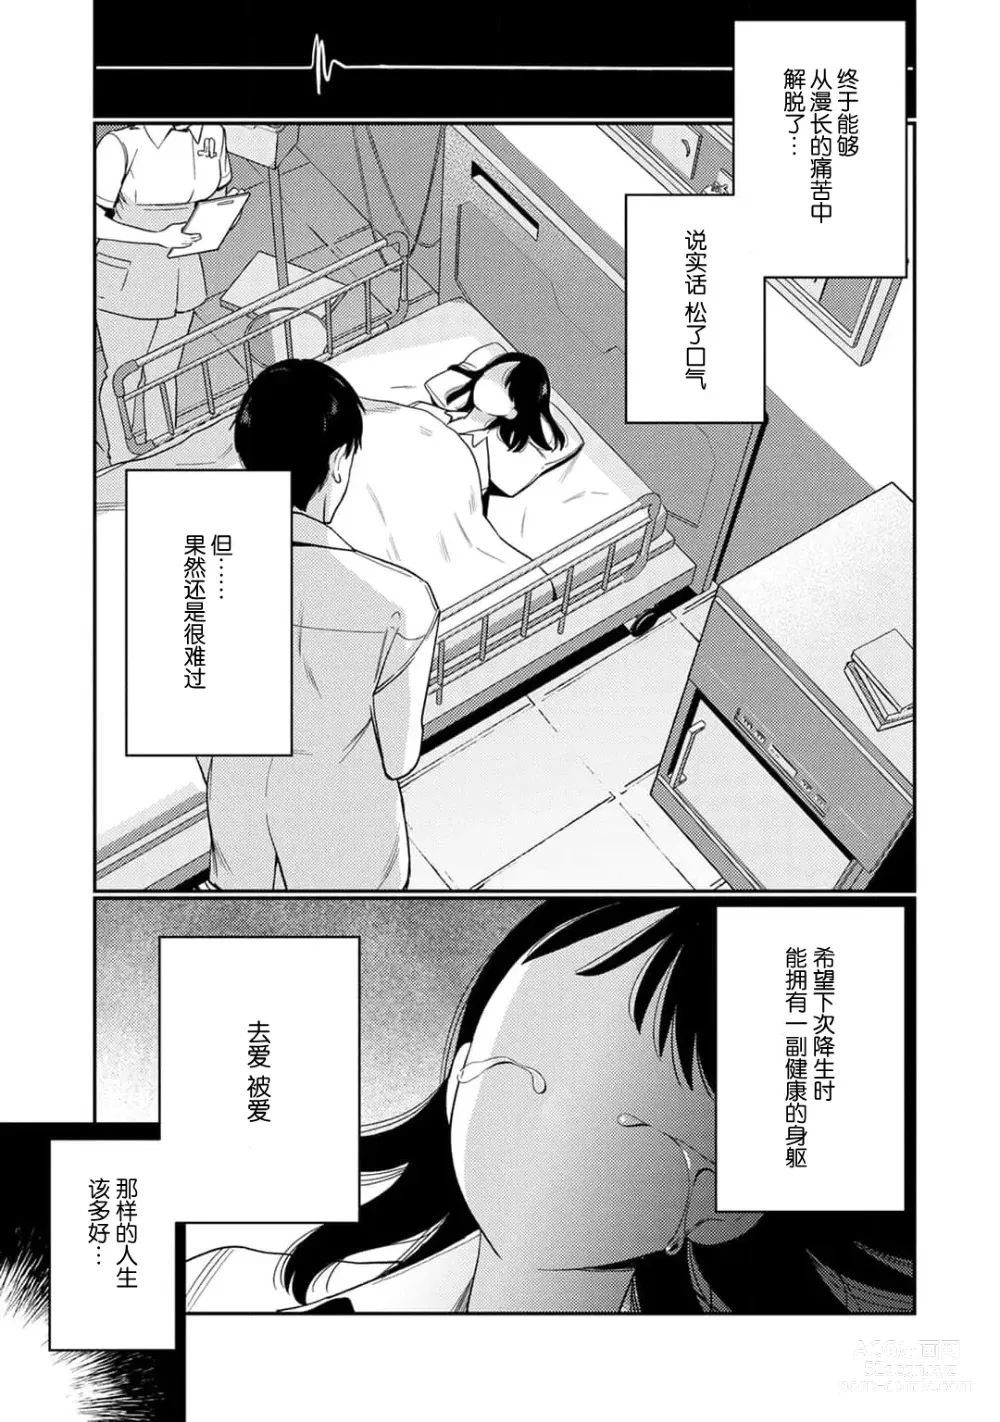 Page 3 of manga 转生成为恶役大小姐，迎接不H就会死的命运~与敌国国王的笼络联姻~ 1-5